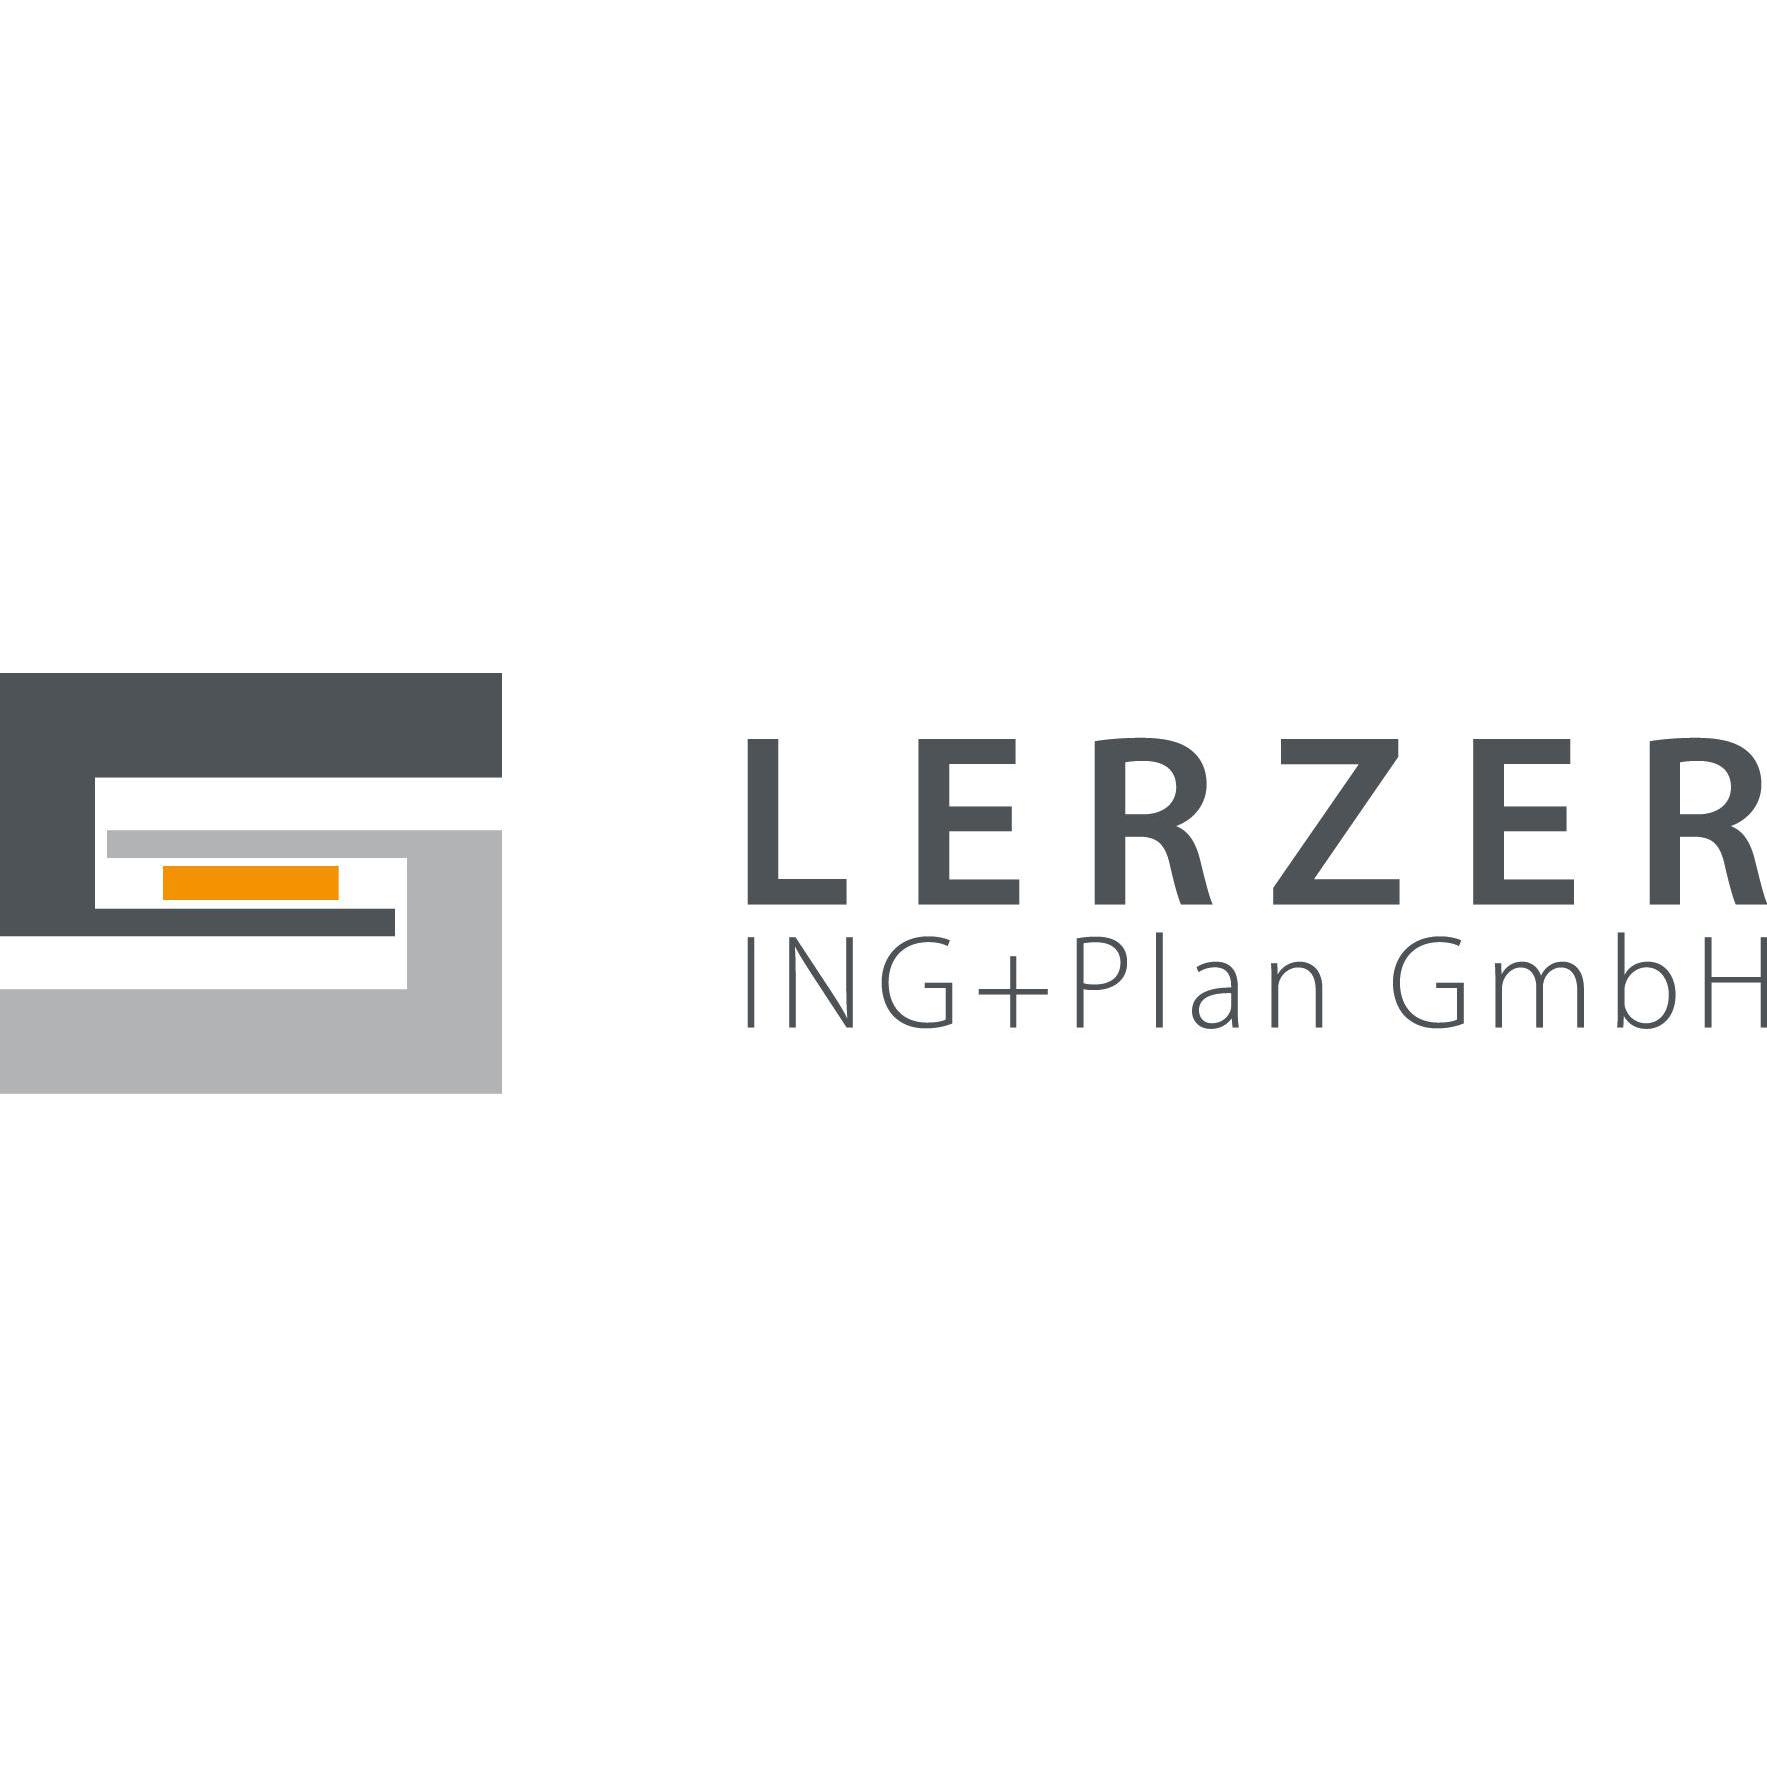 LERZER ING+Plan GmbH in Neumarkt in der Oberpfalz - Logo